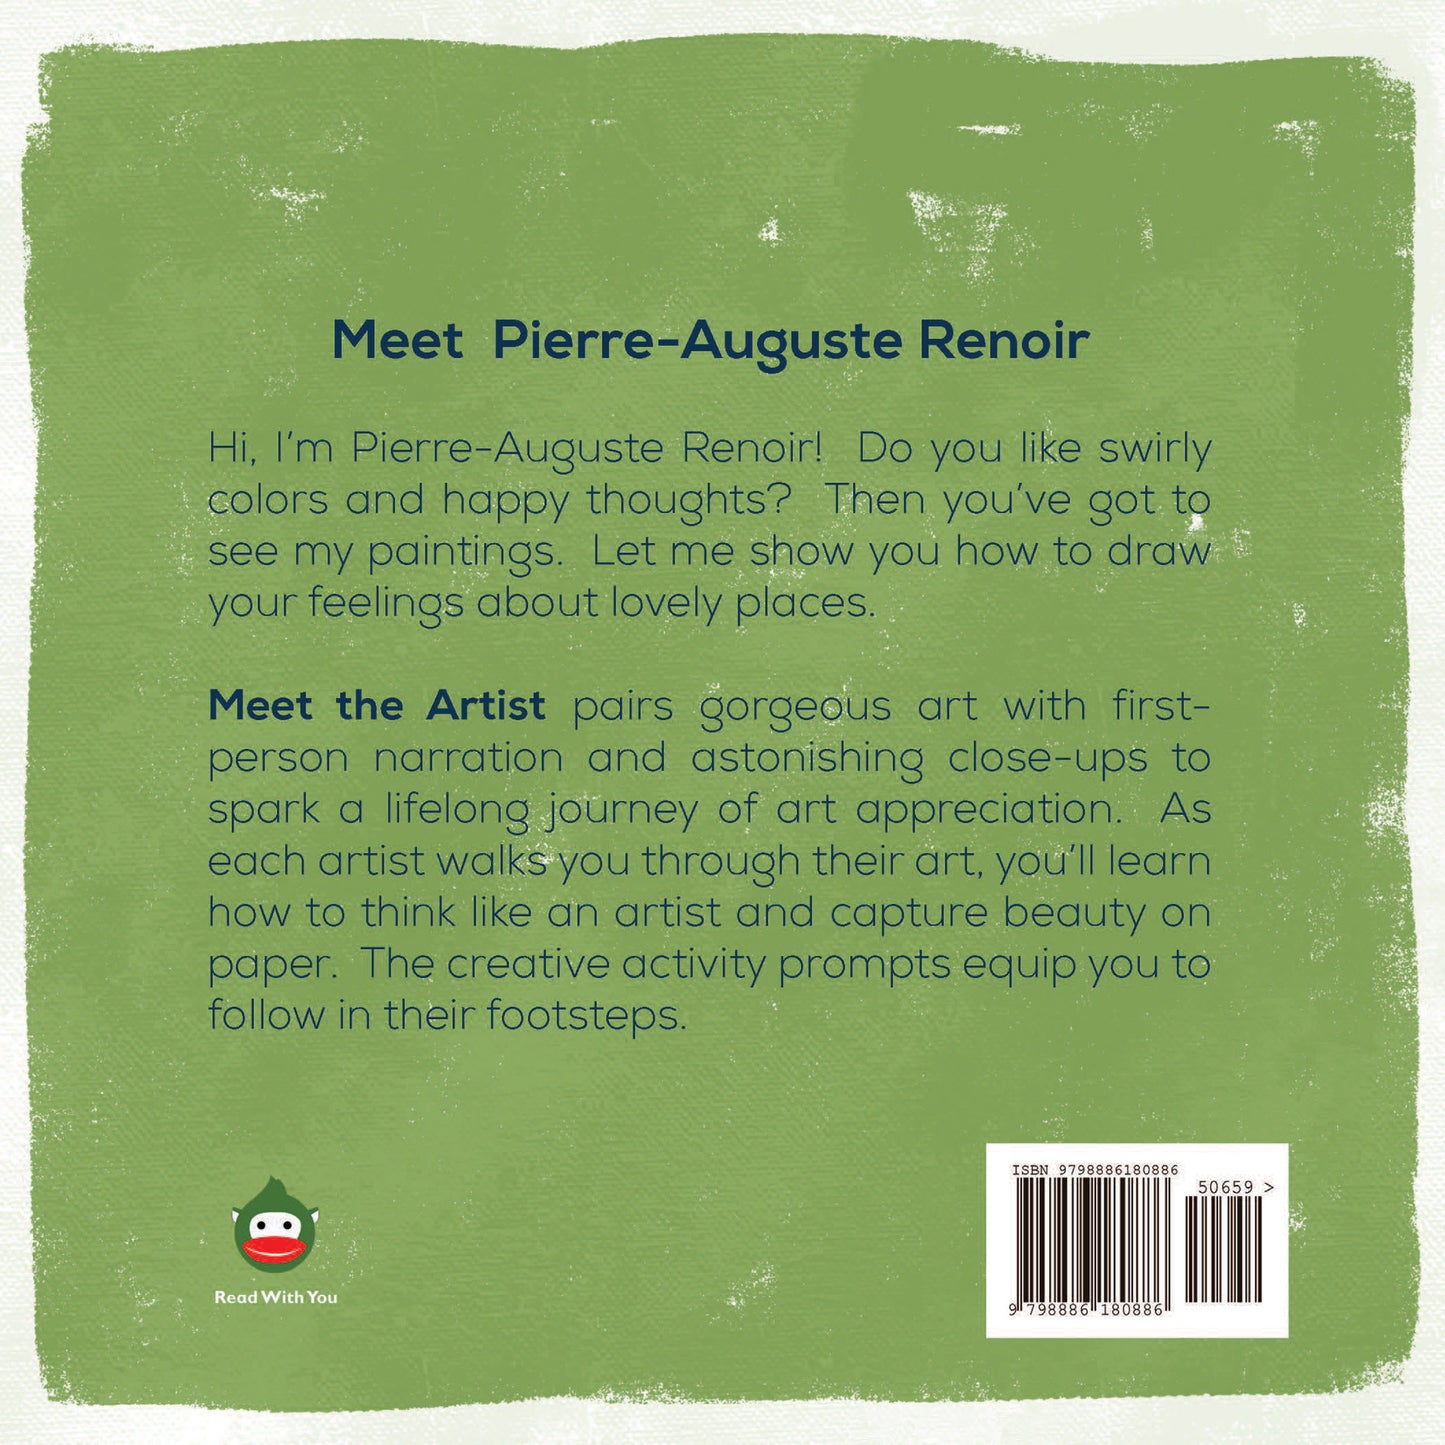 Meet Pierre-Auguste Renoir